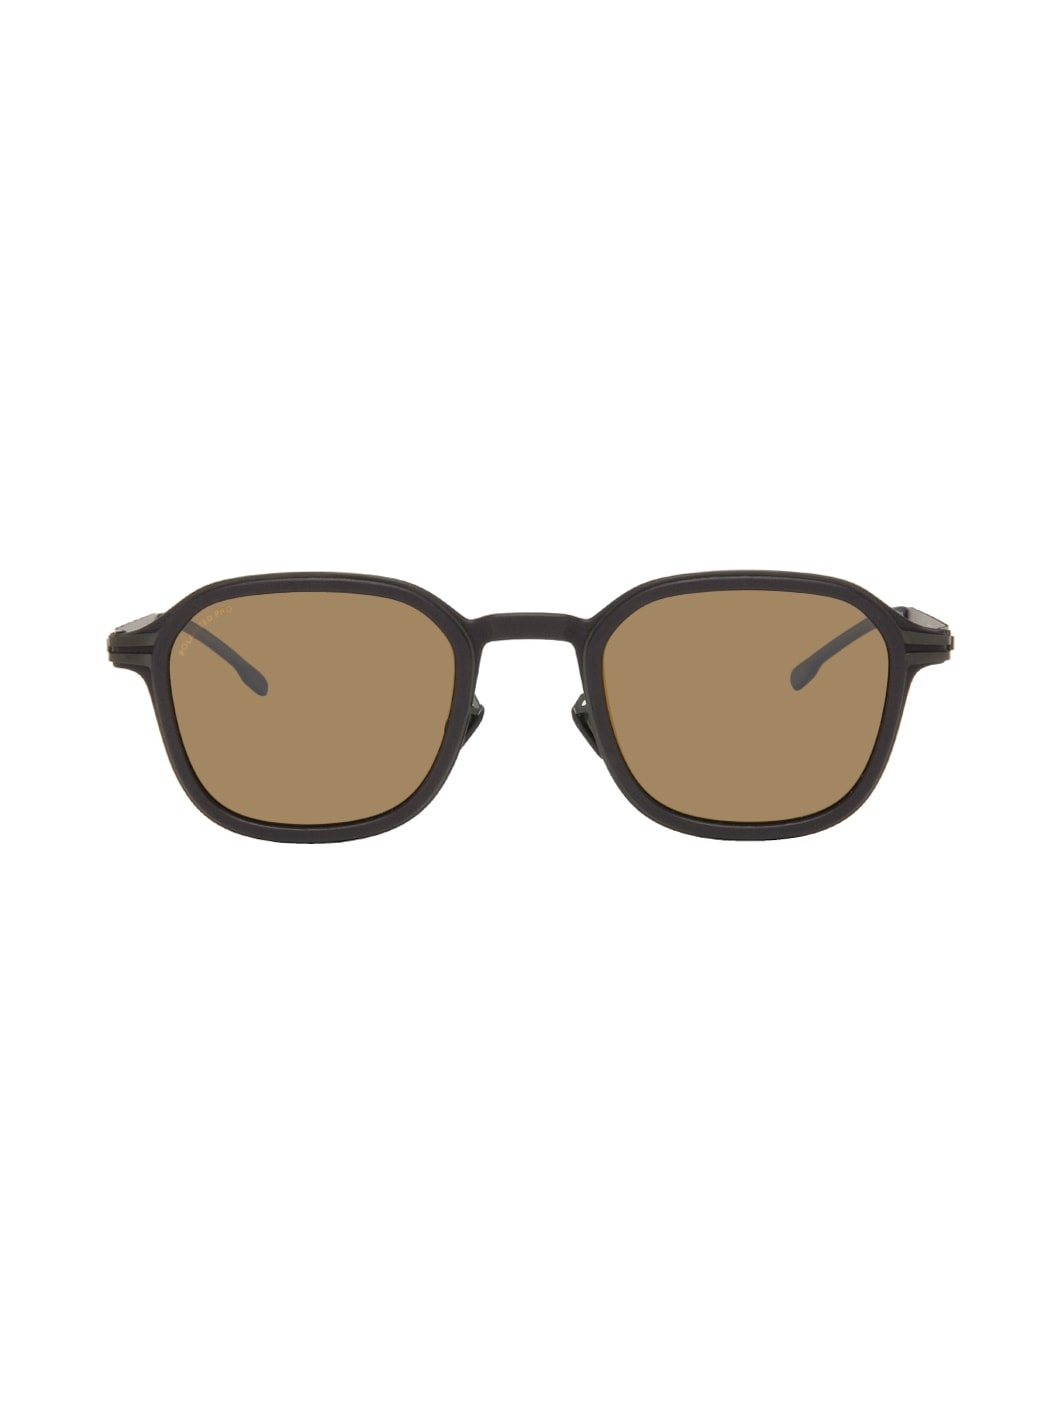 Black Fir Sunglasses - 1